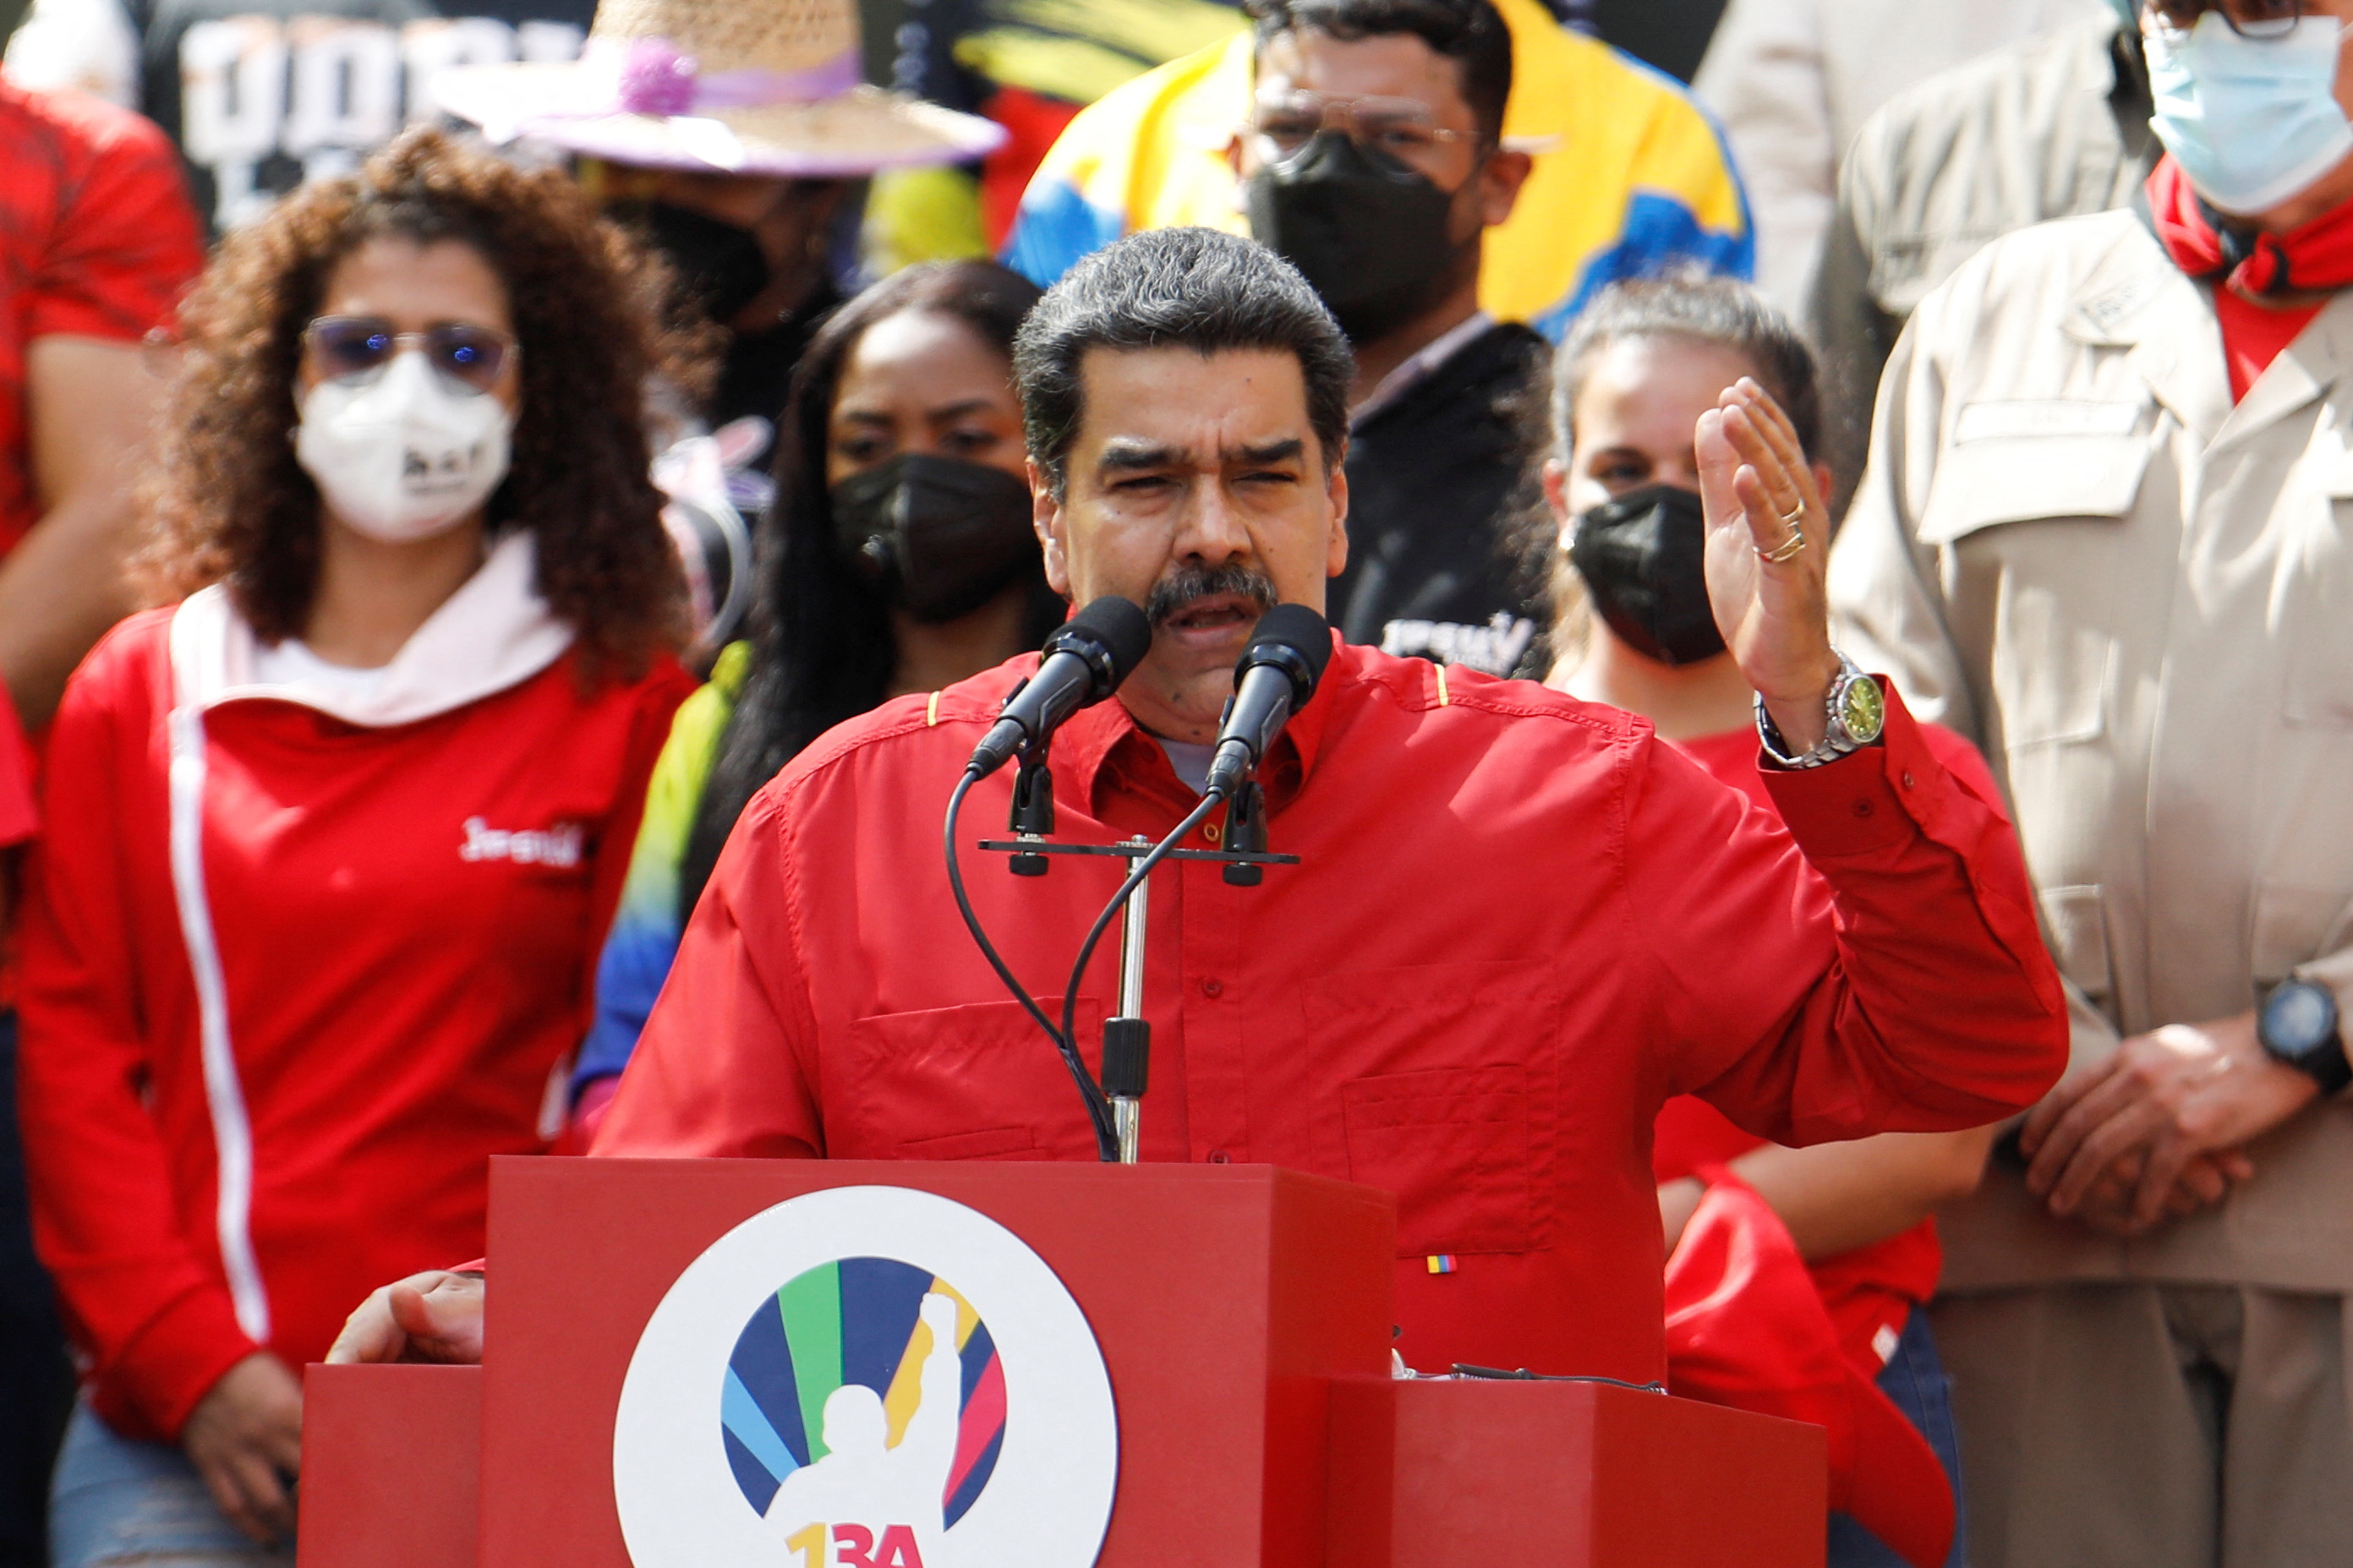 El dictador de Venezuela, Nicolás Maduro